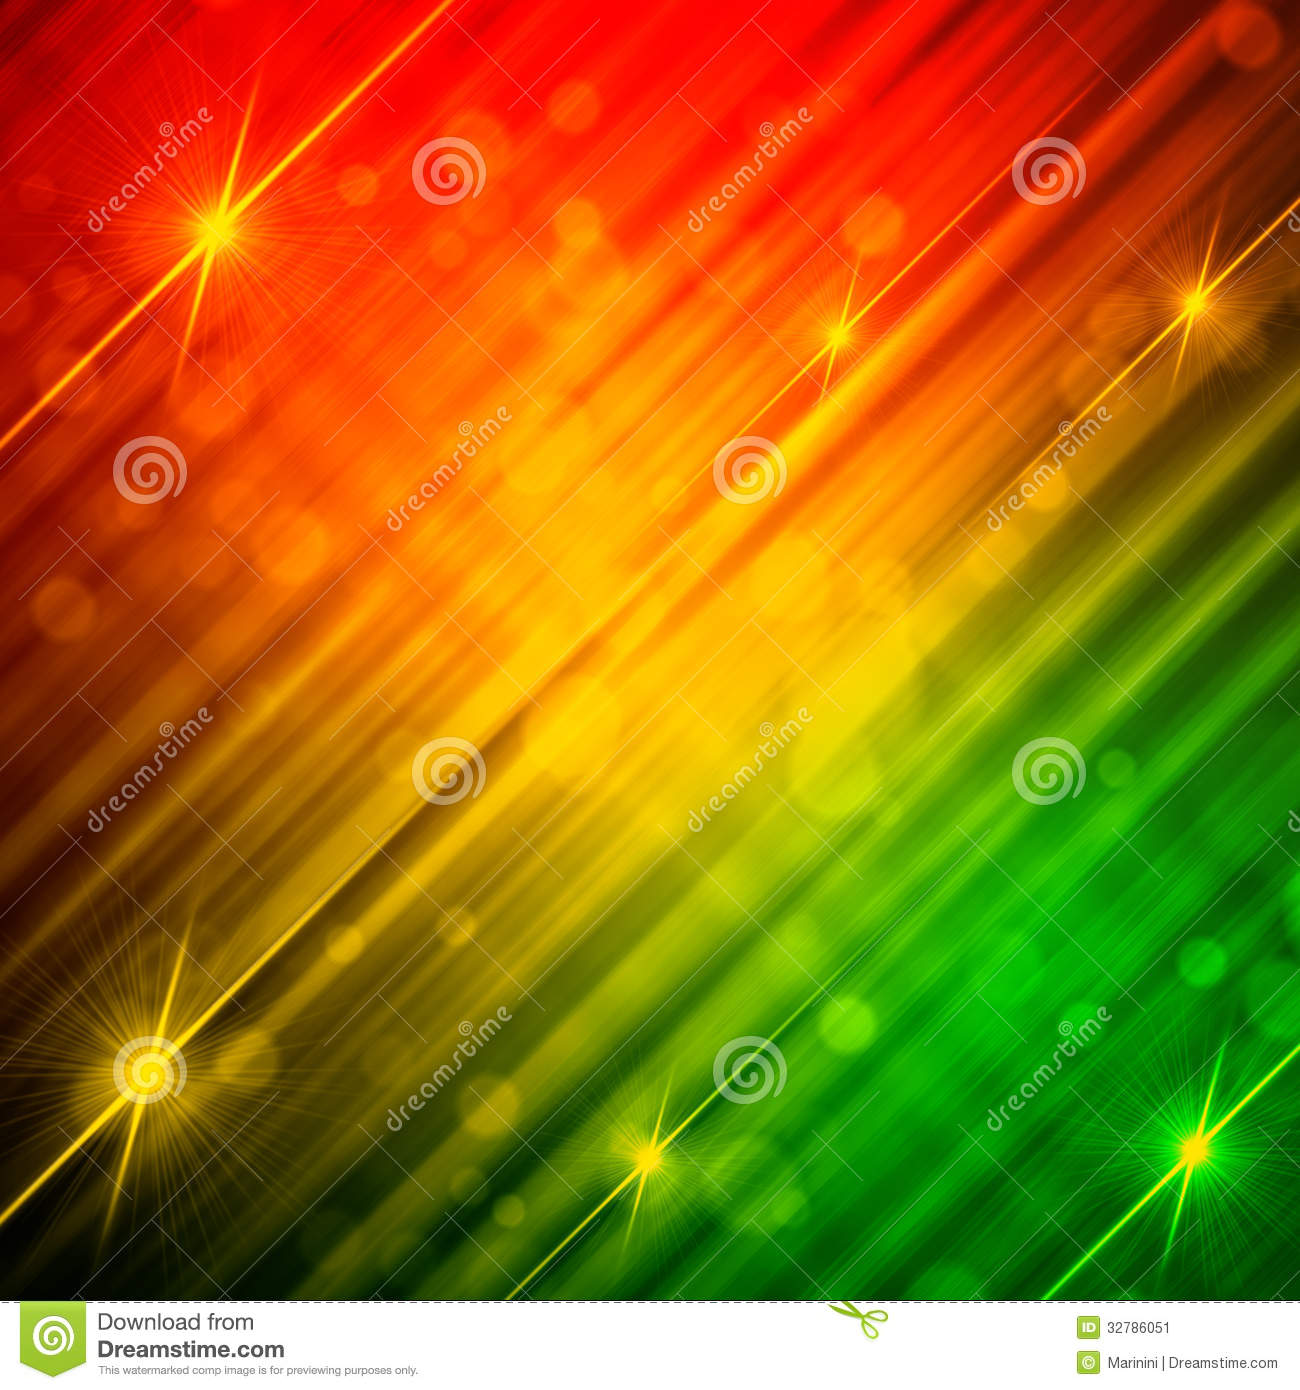 빨간 녹색 벽지,하늘,초록,주황색,빛,노랑